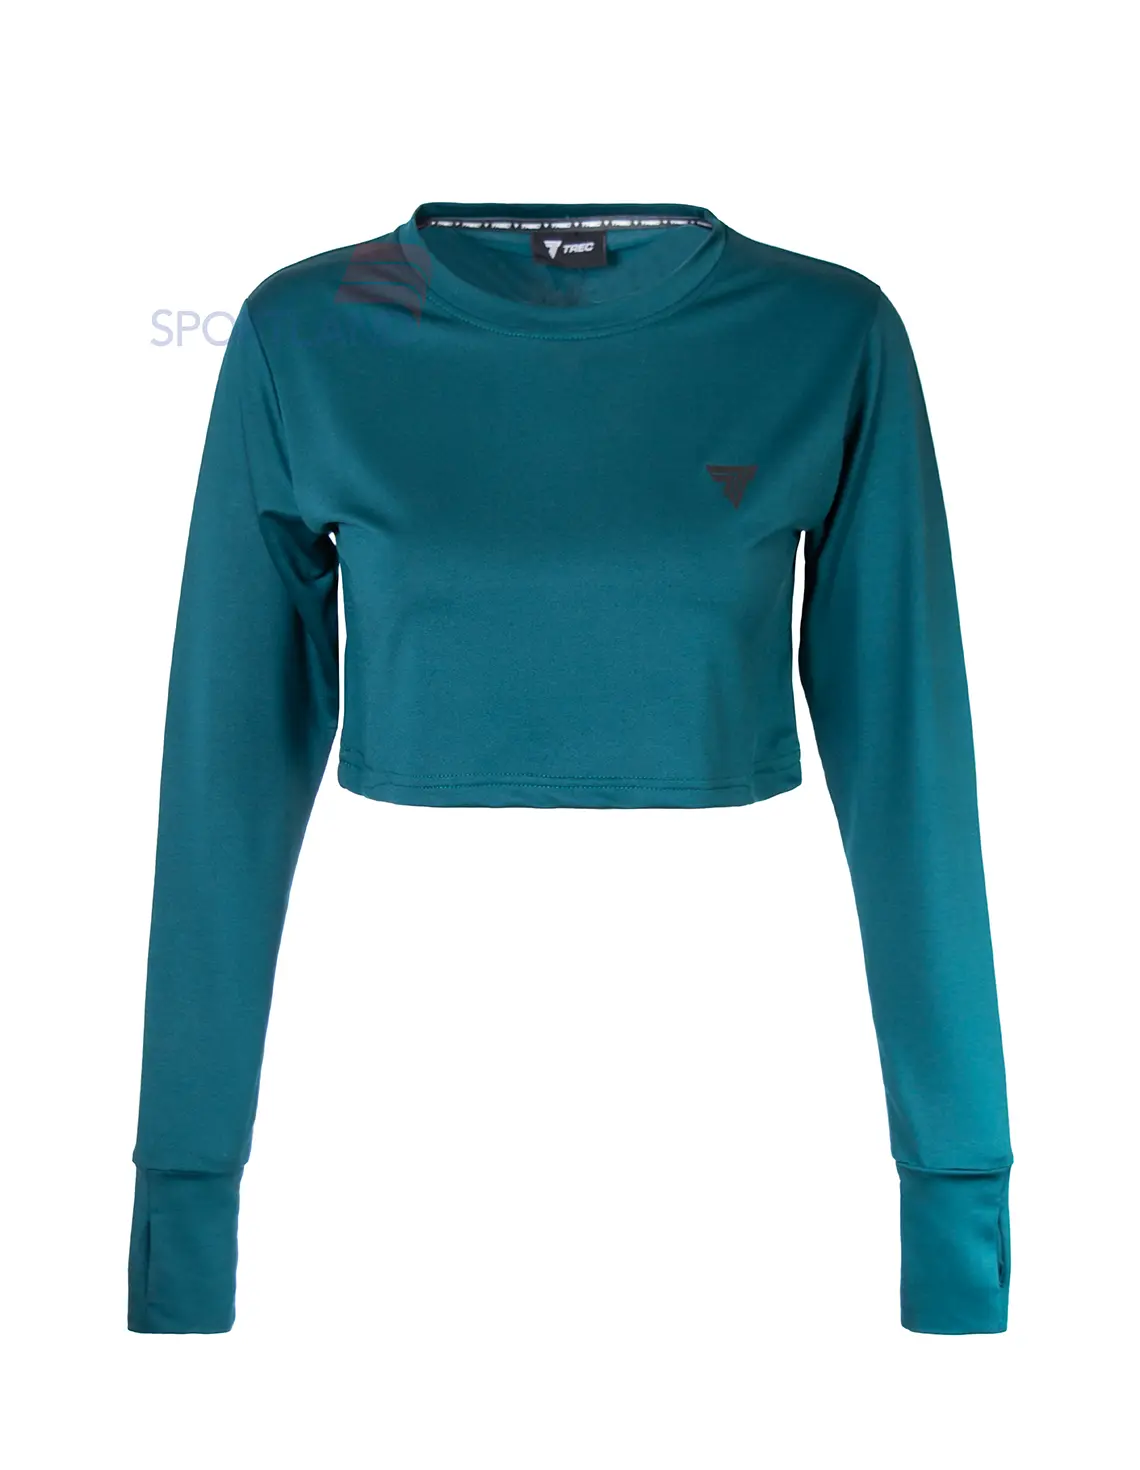 تی شرت ورزشی زنانه Trec Wear Trec Basic Crop Sweatshirt W